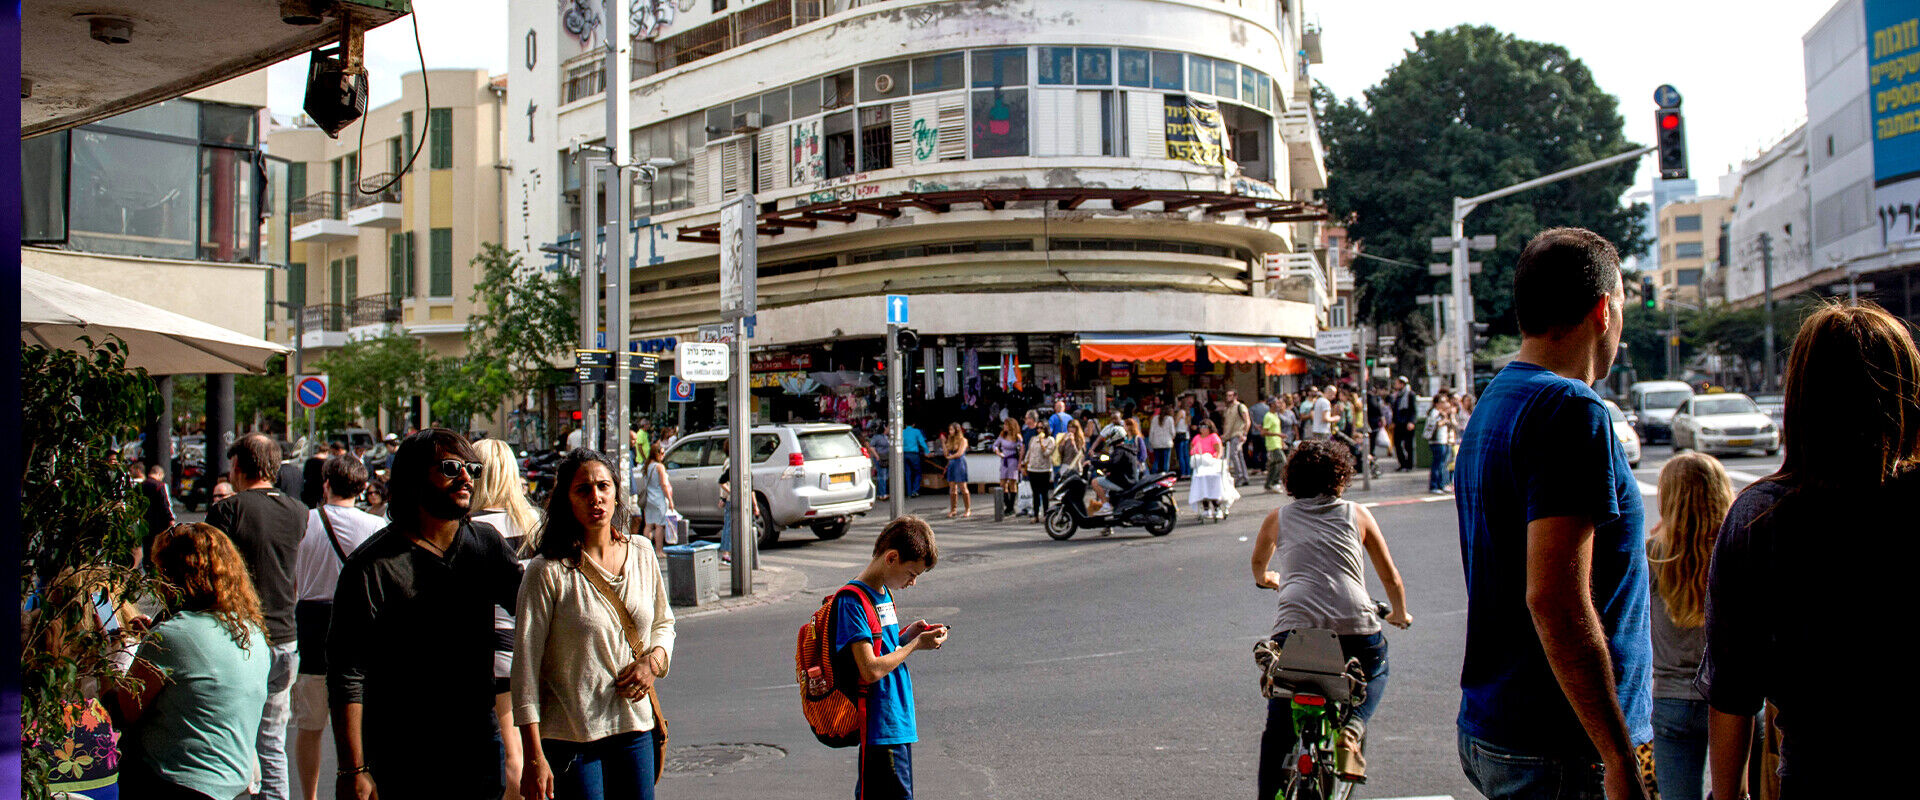 רחוב אלנבי (צילום: דניאל שטרית, פלאש 90)